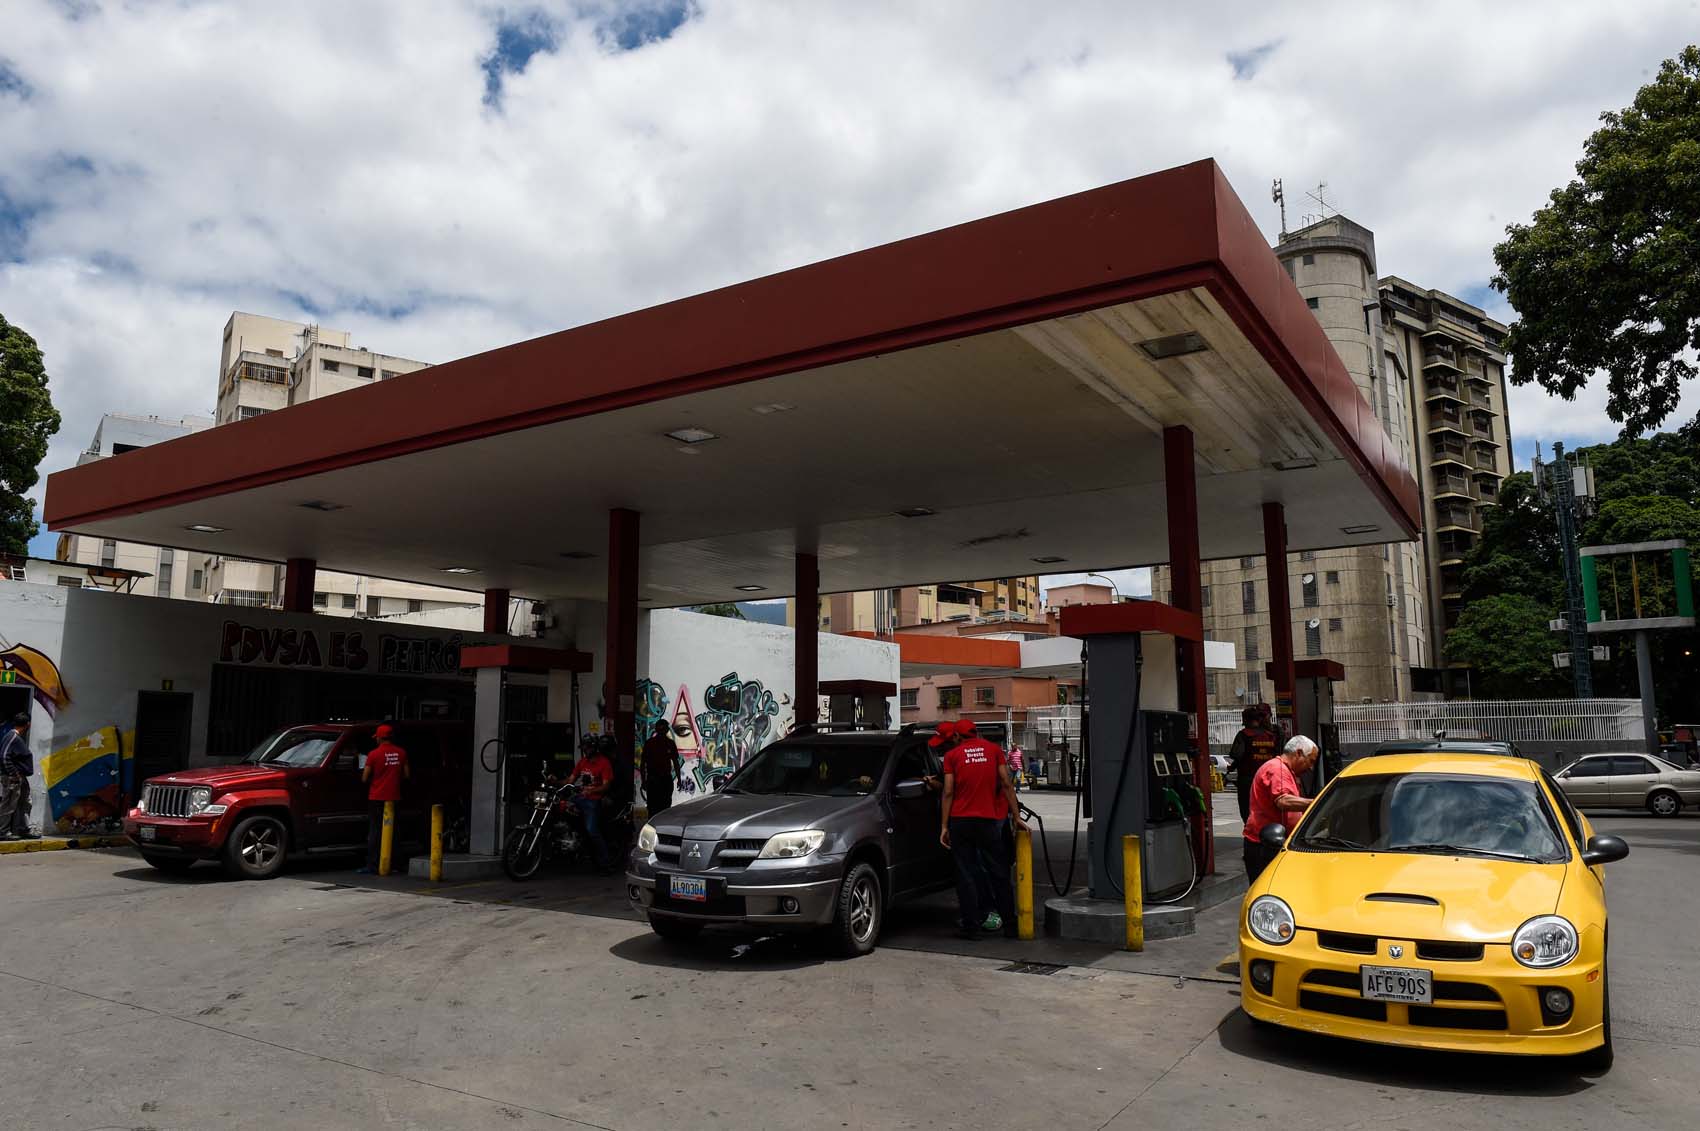 La “agonía” sigue por la gasolina: Hasta seis días para llenar el tanque en Maracaibo